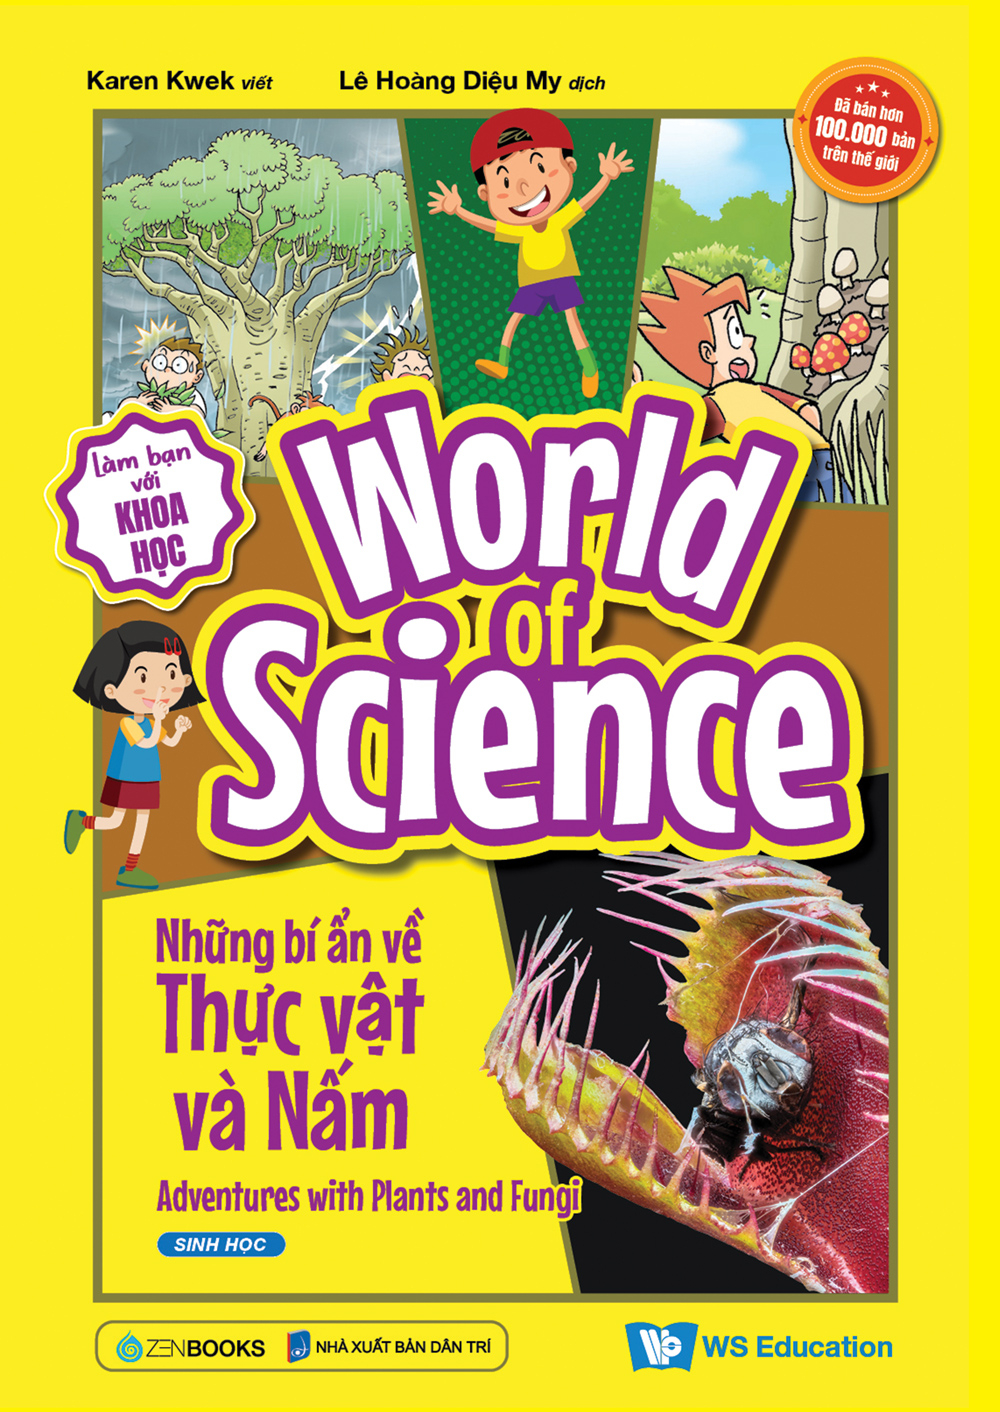 World Of Science - Những Bí Ẩn Về Thực Vật Và Nấm